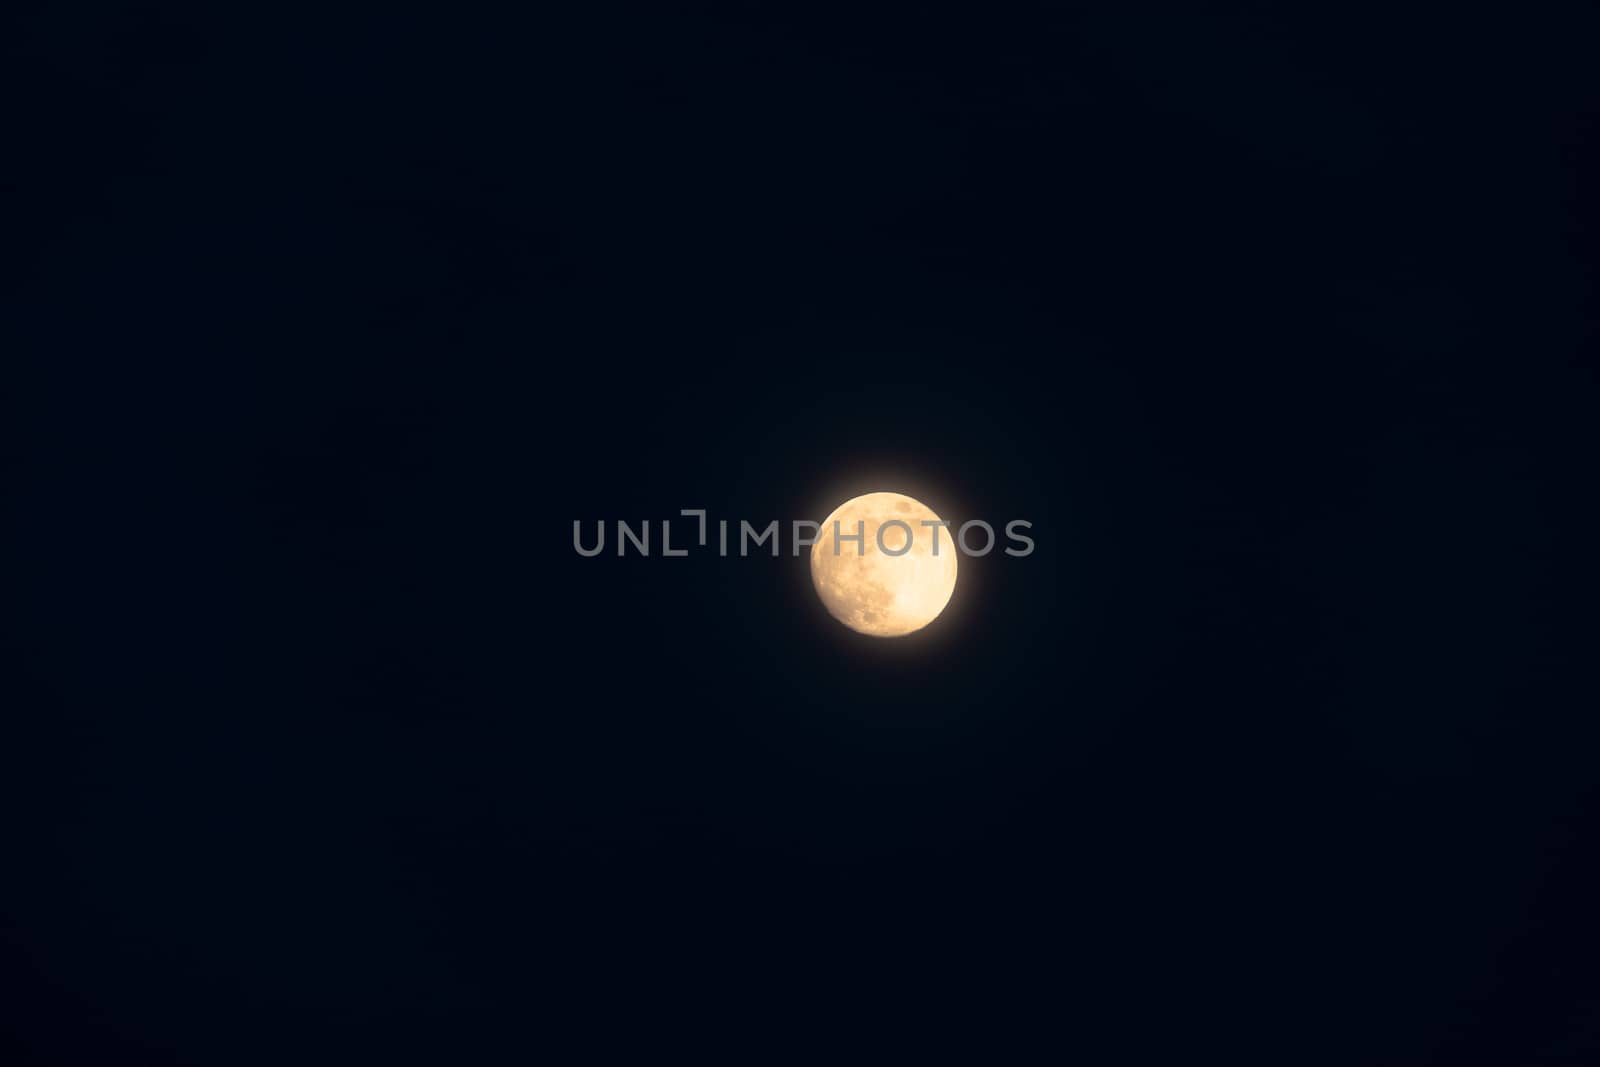 Full moon isolated on a black sky by rdv27